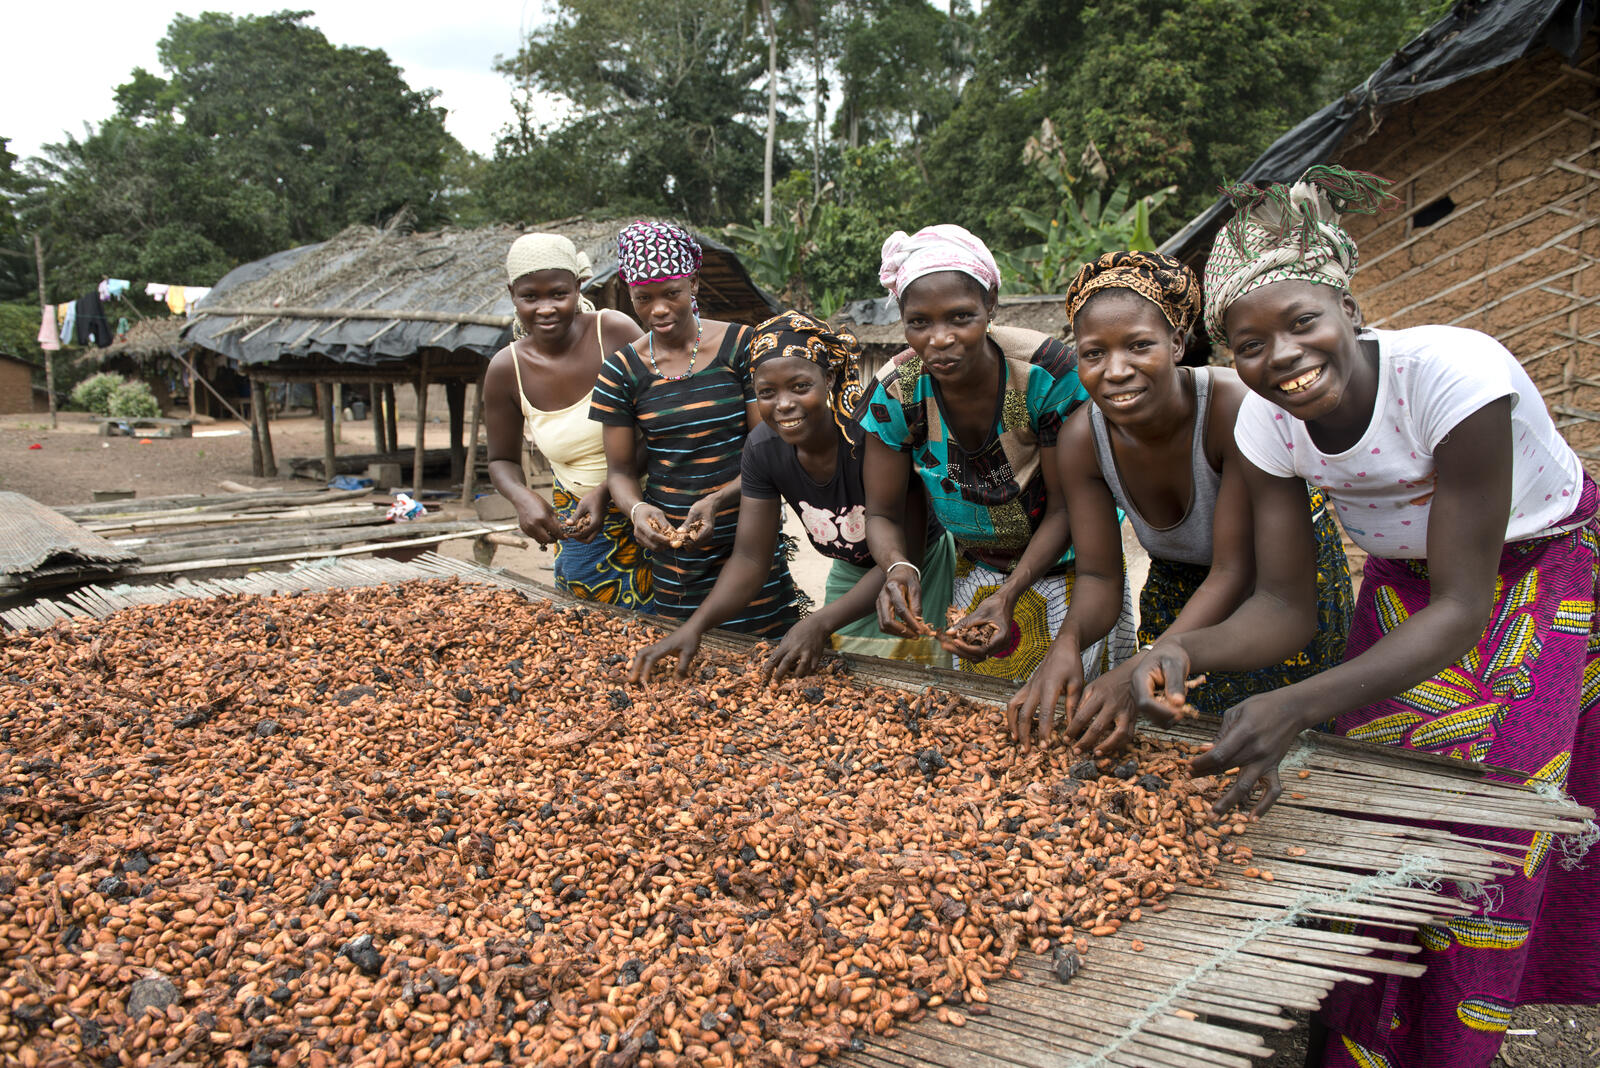 Coopasa, coöperatie cacao